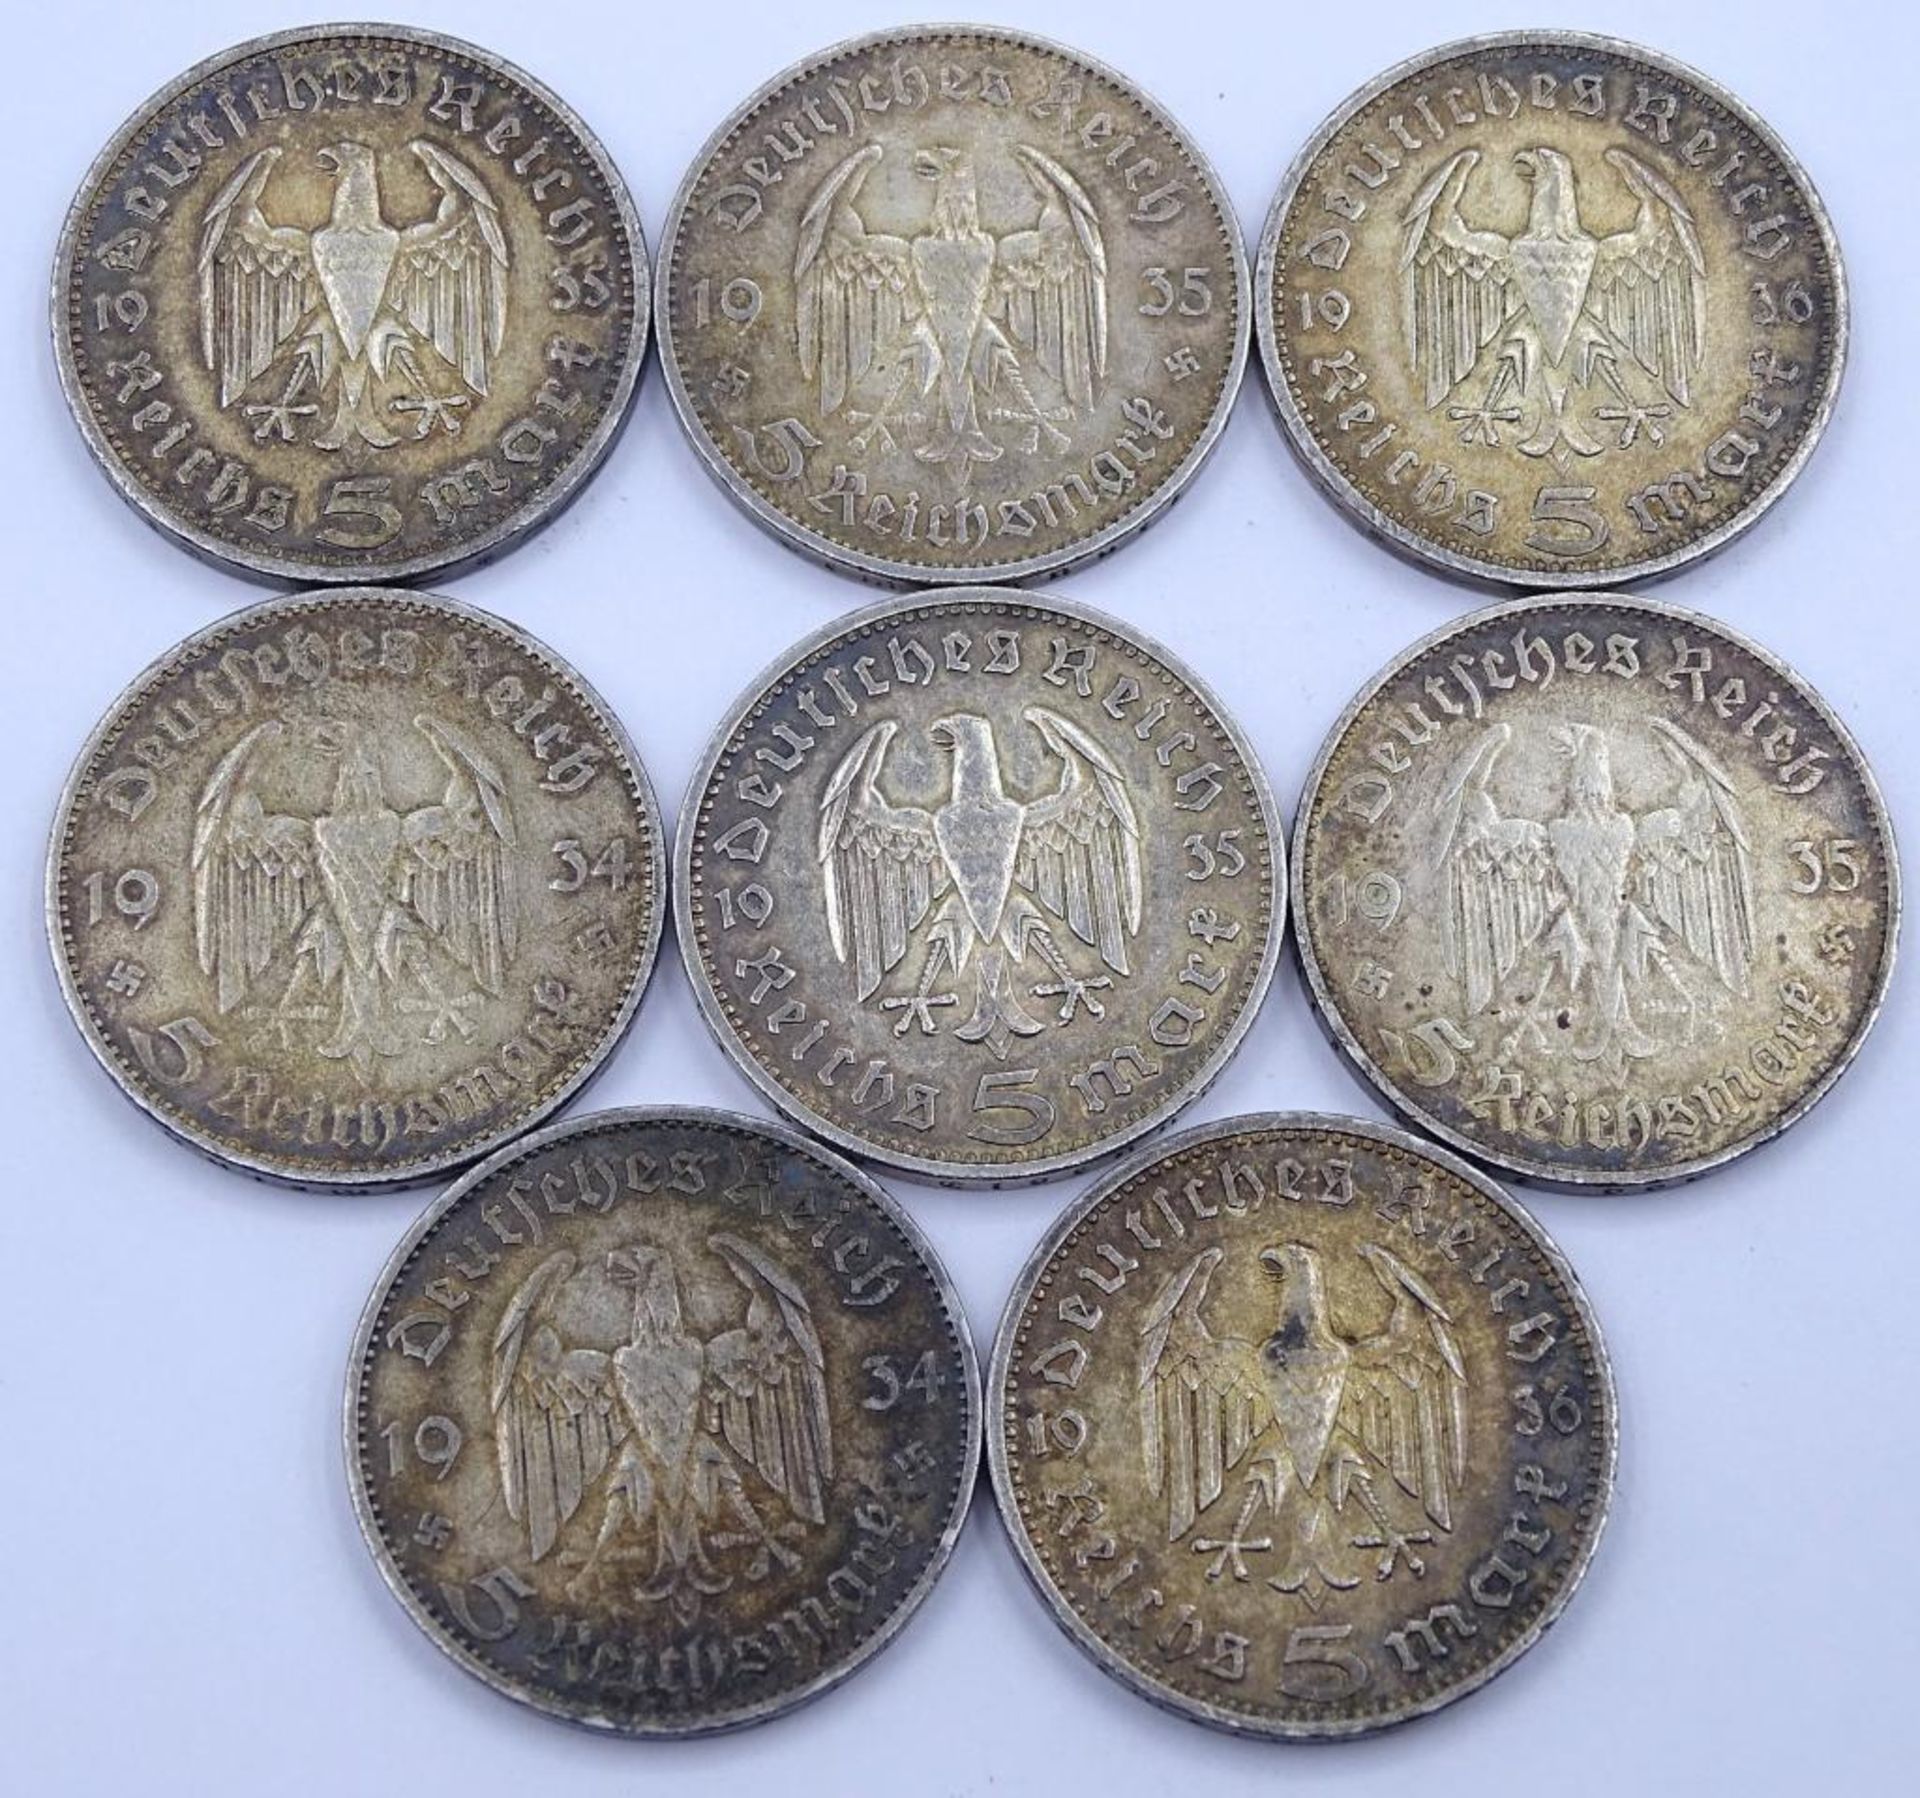 Konvolut 5 Reichsmark Münzen, Deutsches Reich,1934/35/36, 8 Stück,Silb